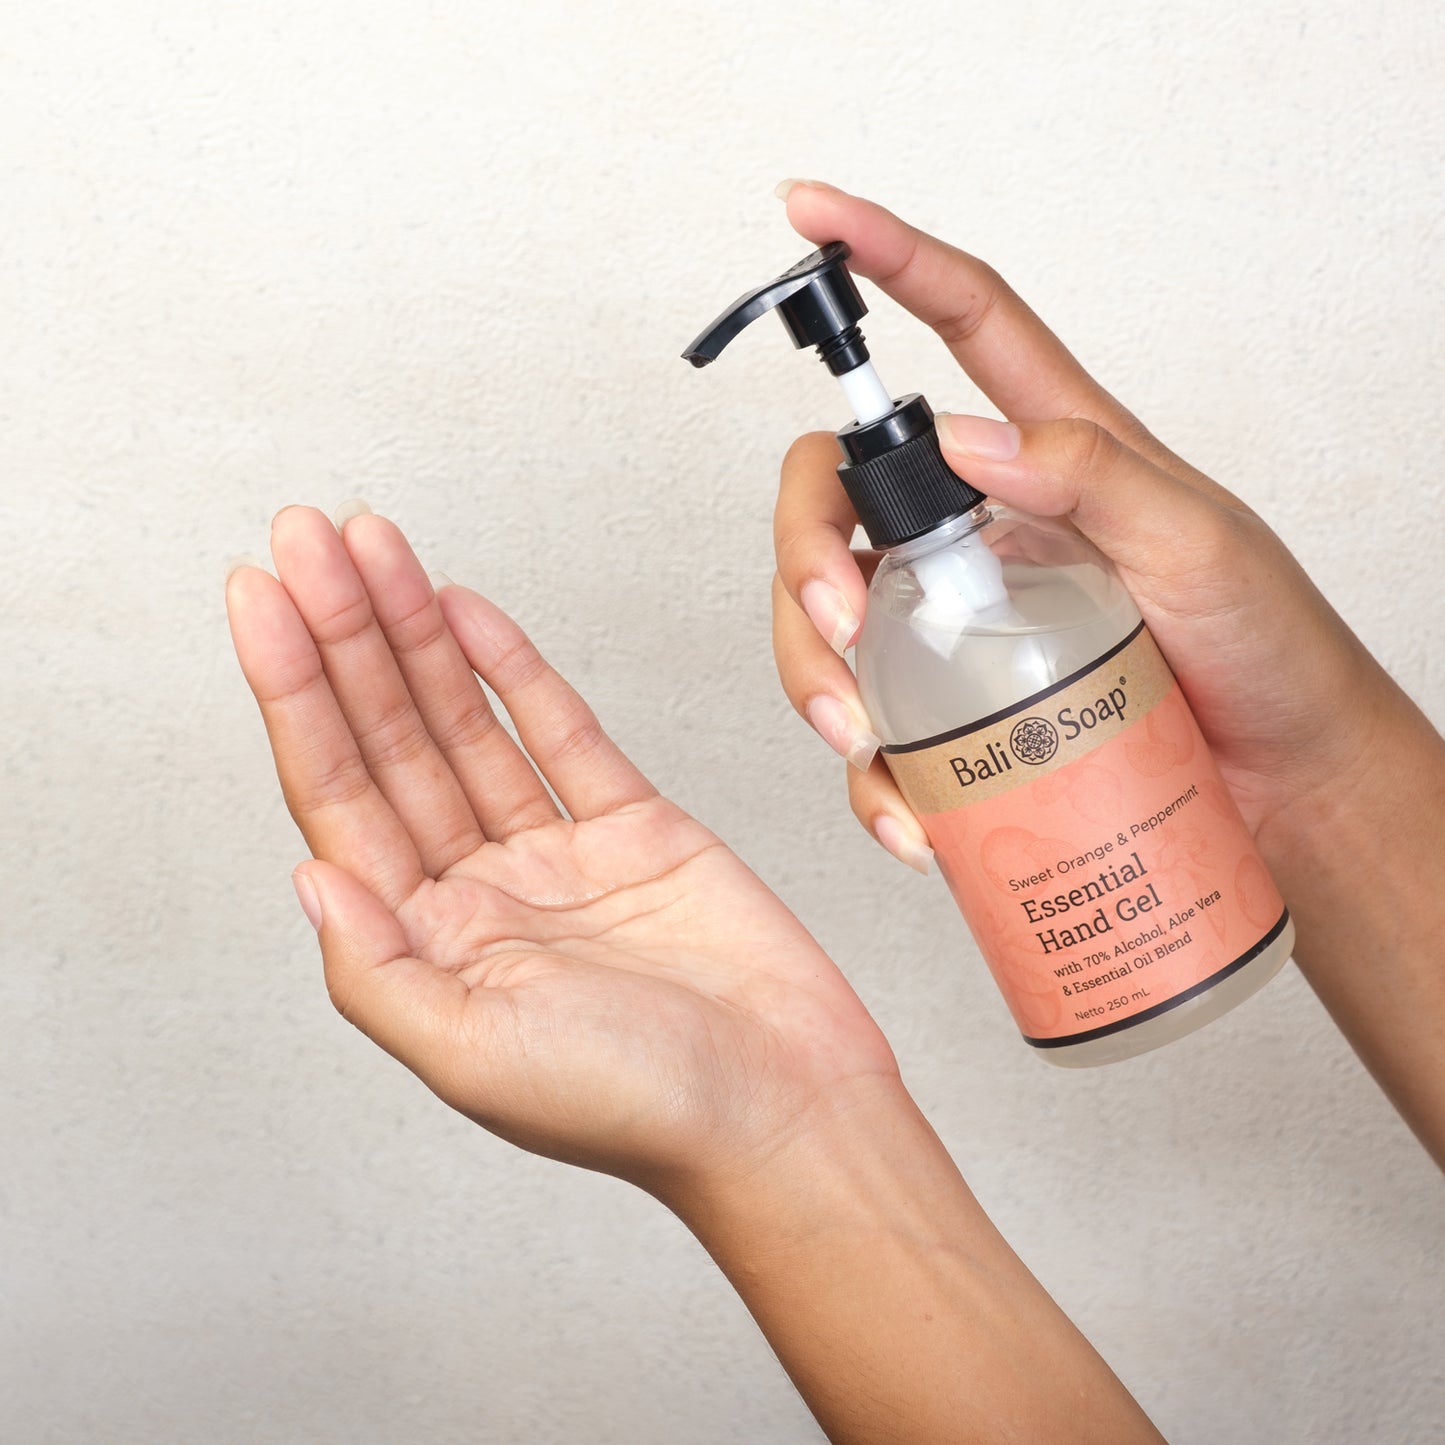 Bali Soap - Orange Peppermint - Hand Gel 250ml